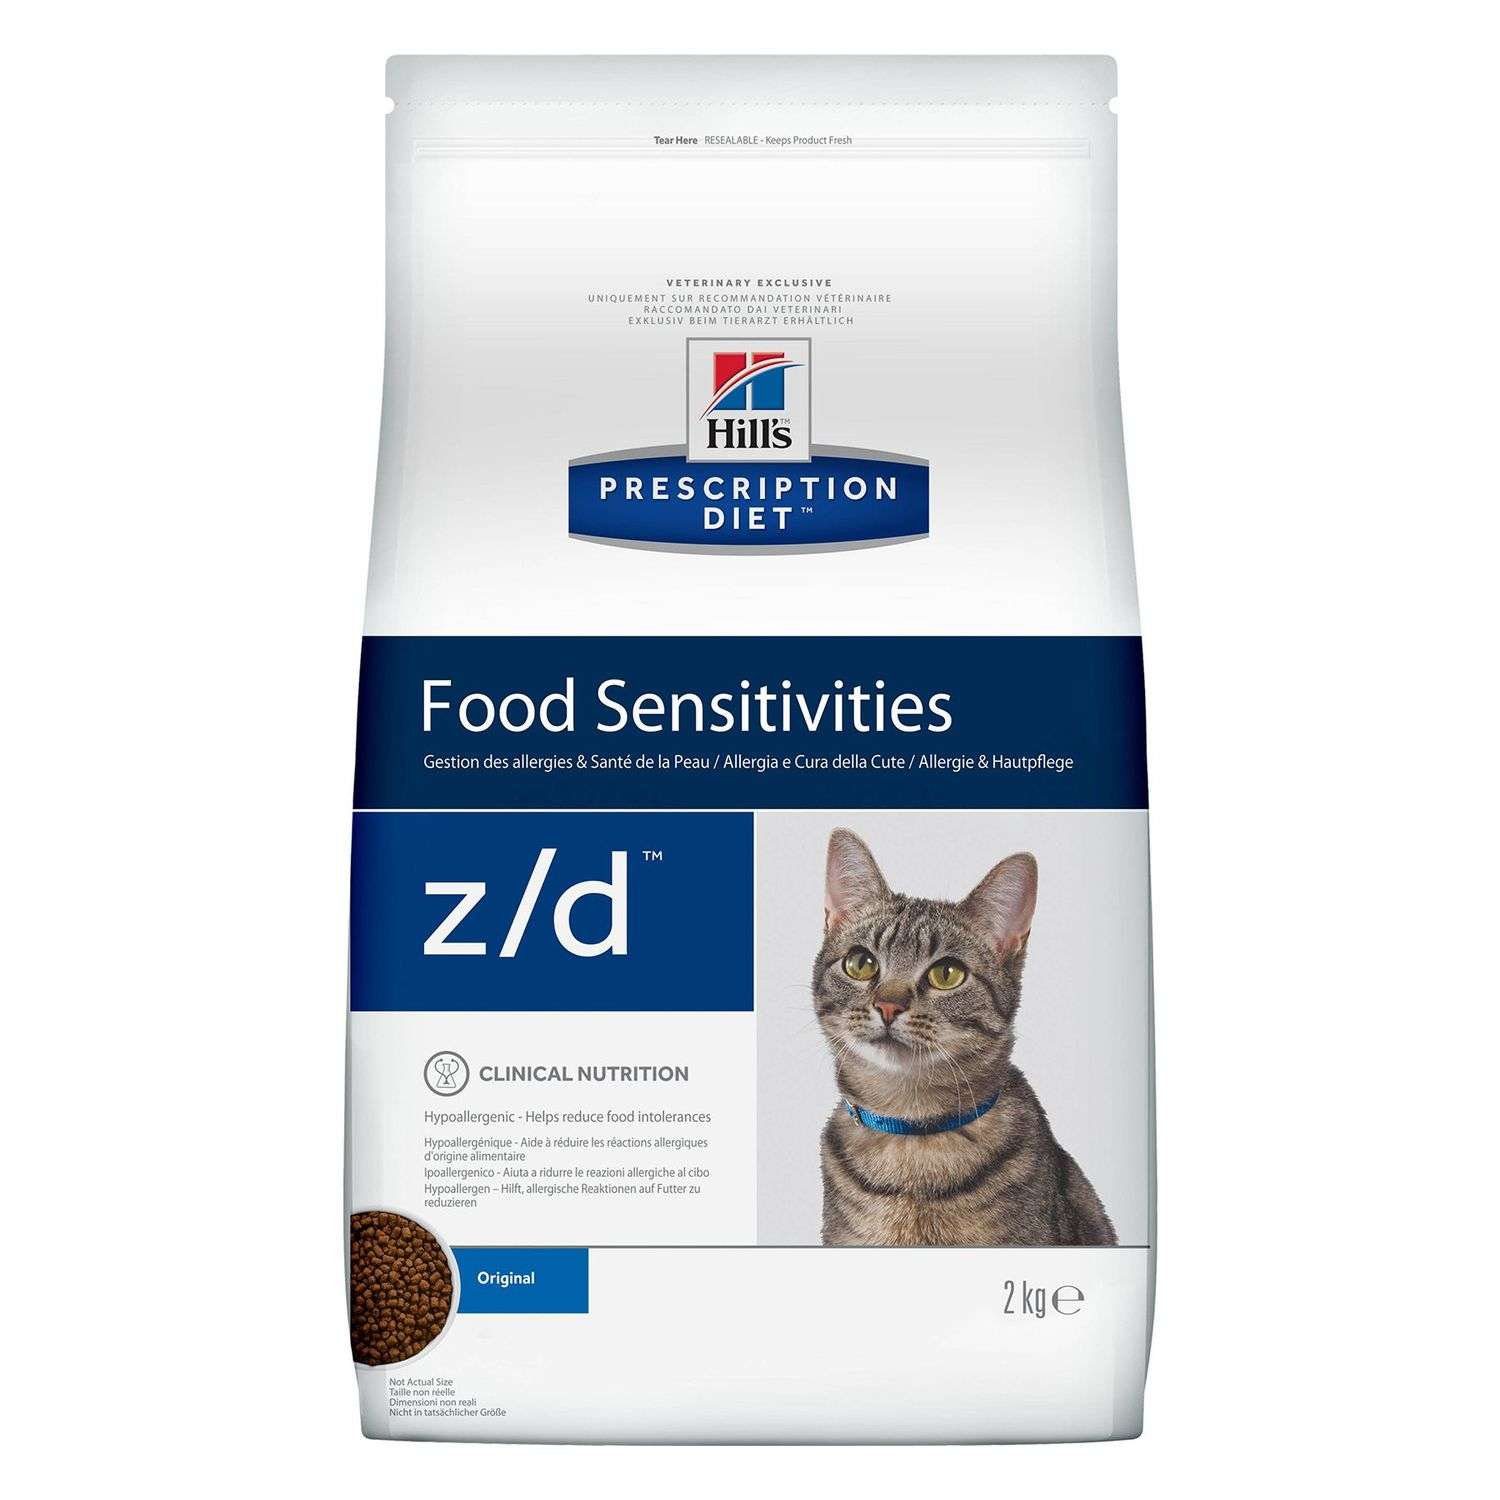 Корм для кошек HILLS 2кг Prescription Diet z/d Food Sensitivities для кожи и при аллергии и заболеваниях кожи сухой - фото 1